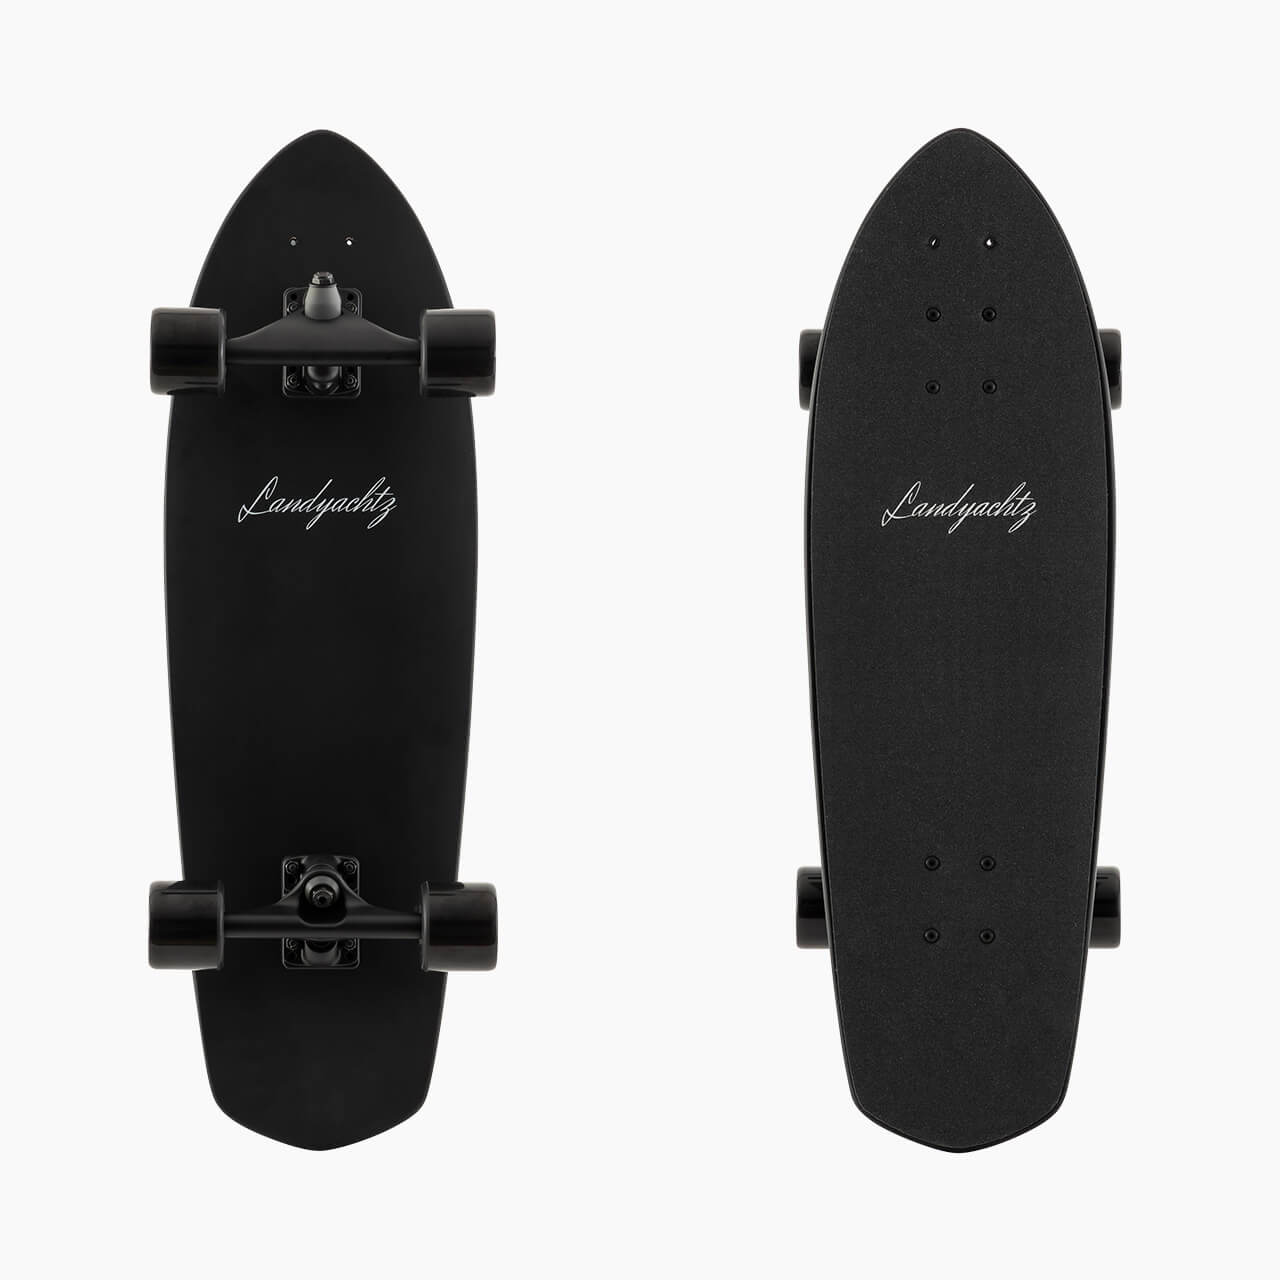 Landyachtz Surf Skate Series Skateboard, Pocket Knife Black Complete